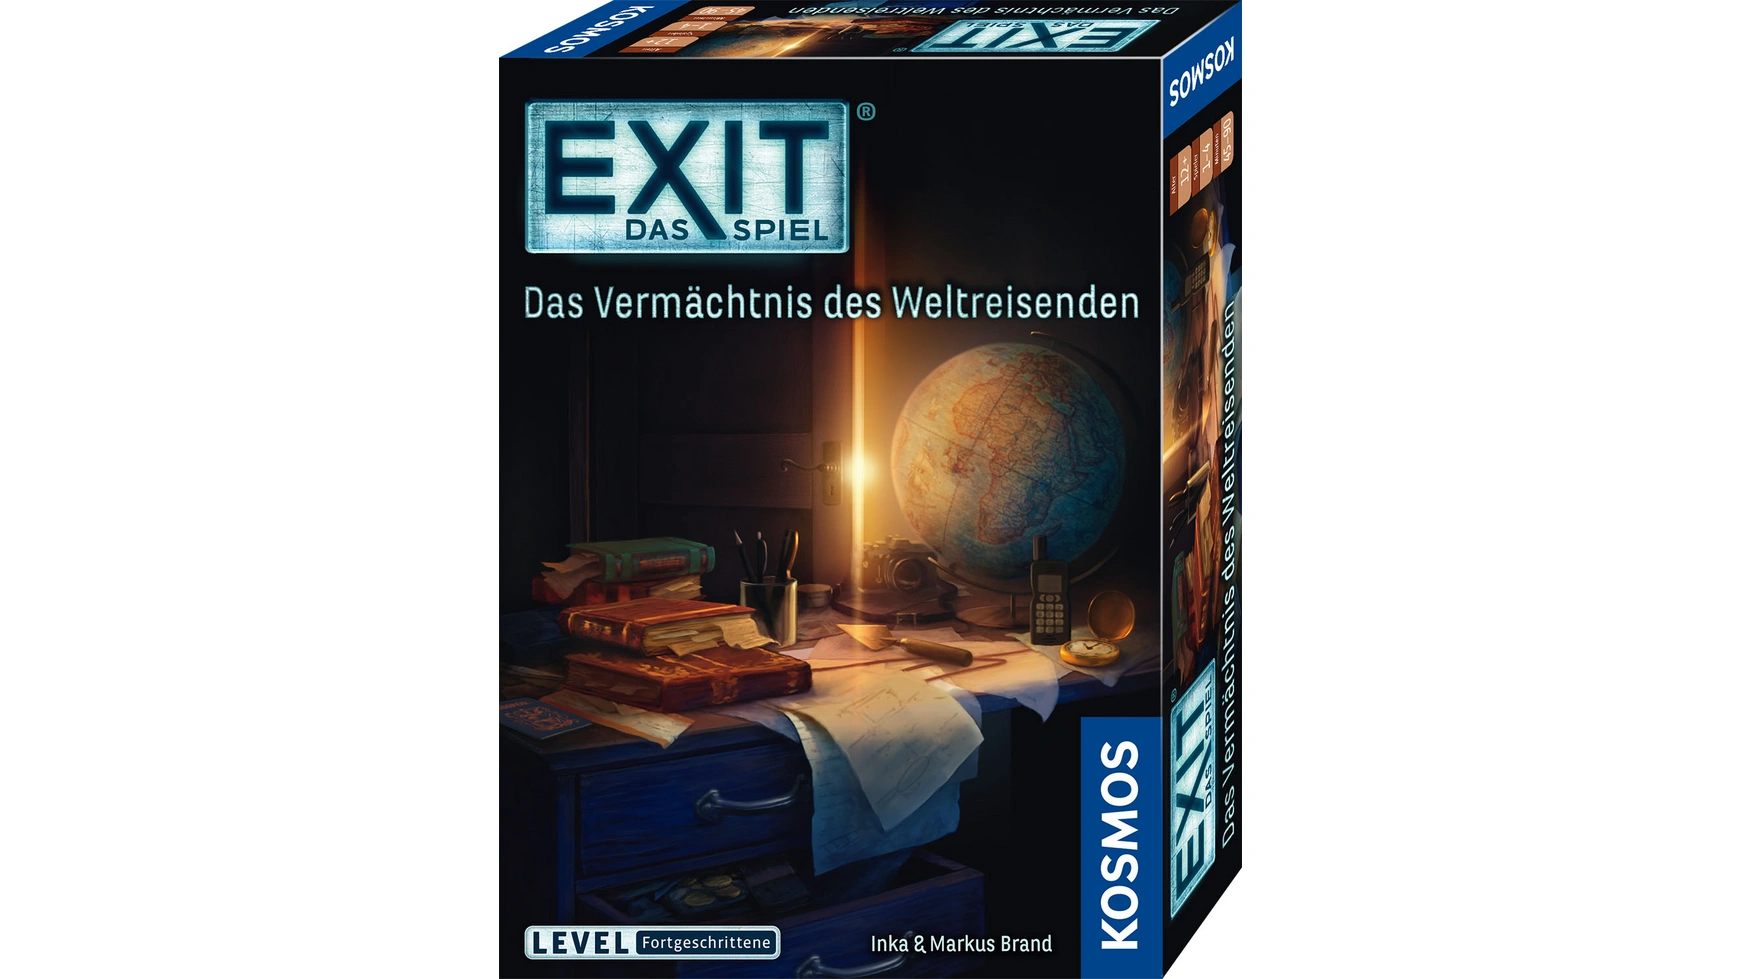 Exit игра: наследие путешественника по миру, уровень: продвинутый Kosmos цена и фото